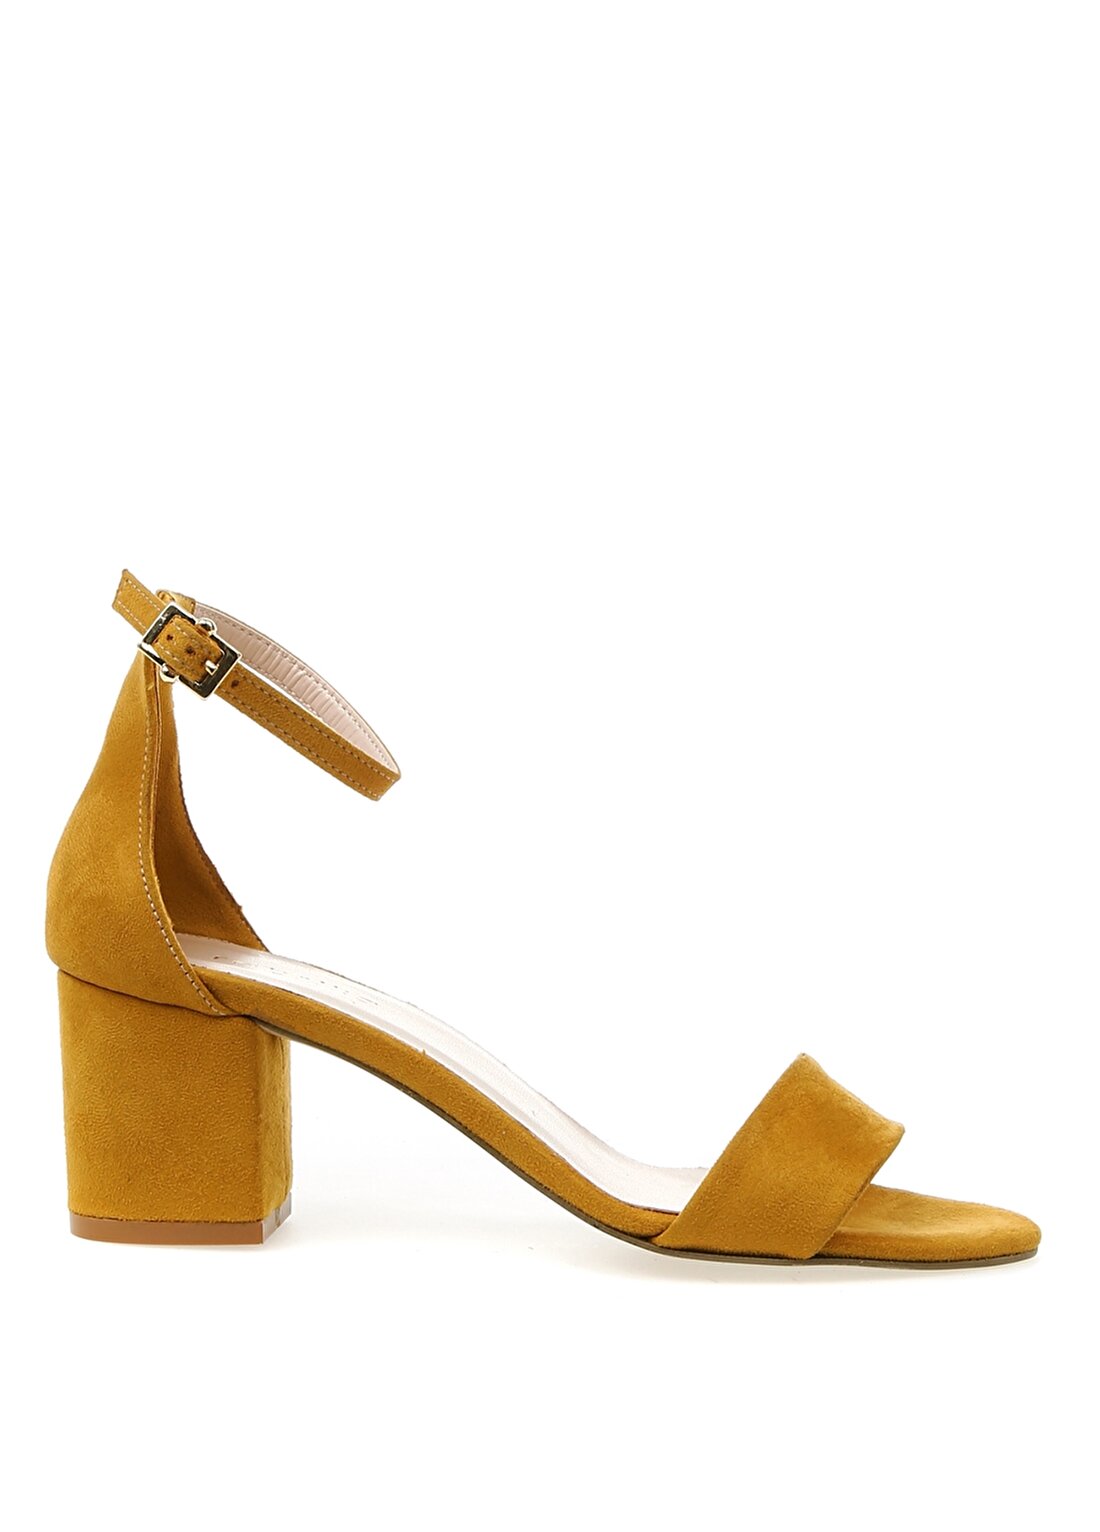 Fabrika Sarı Kadın Topuklu Ayakkabı